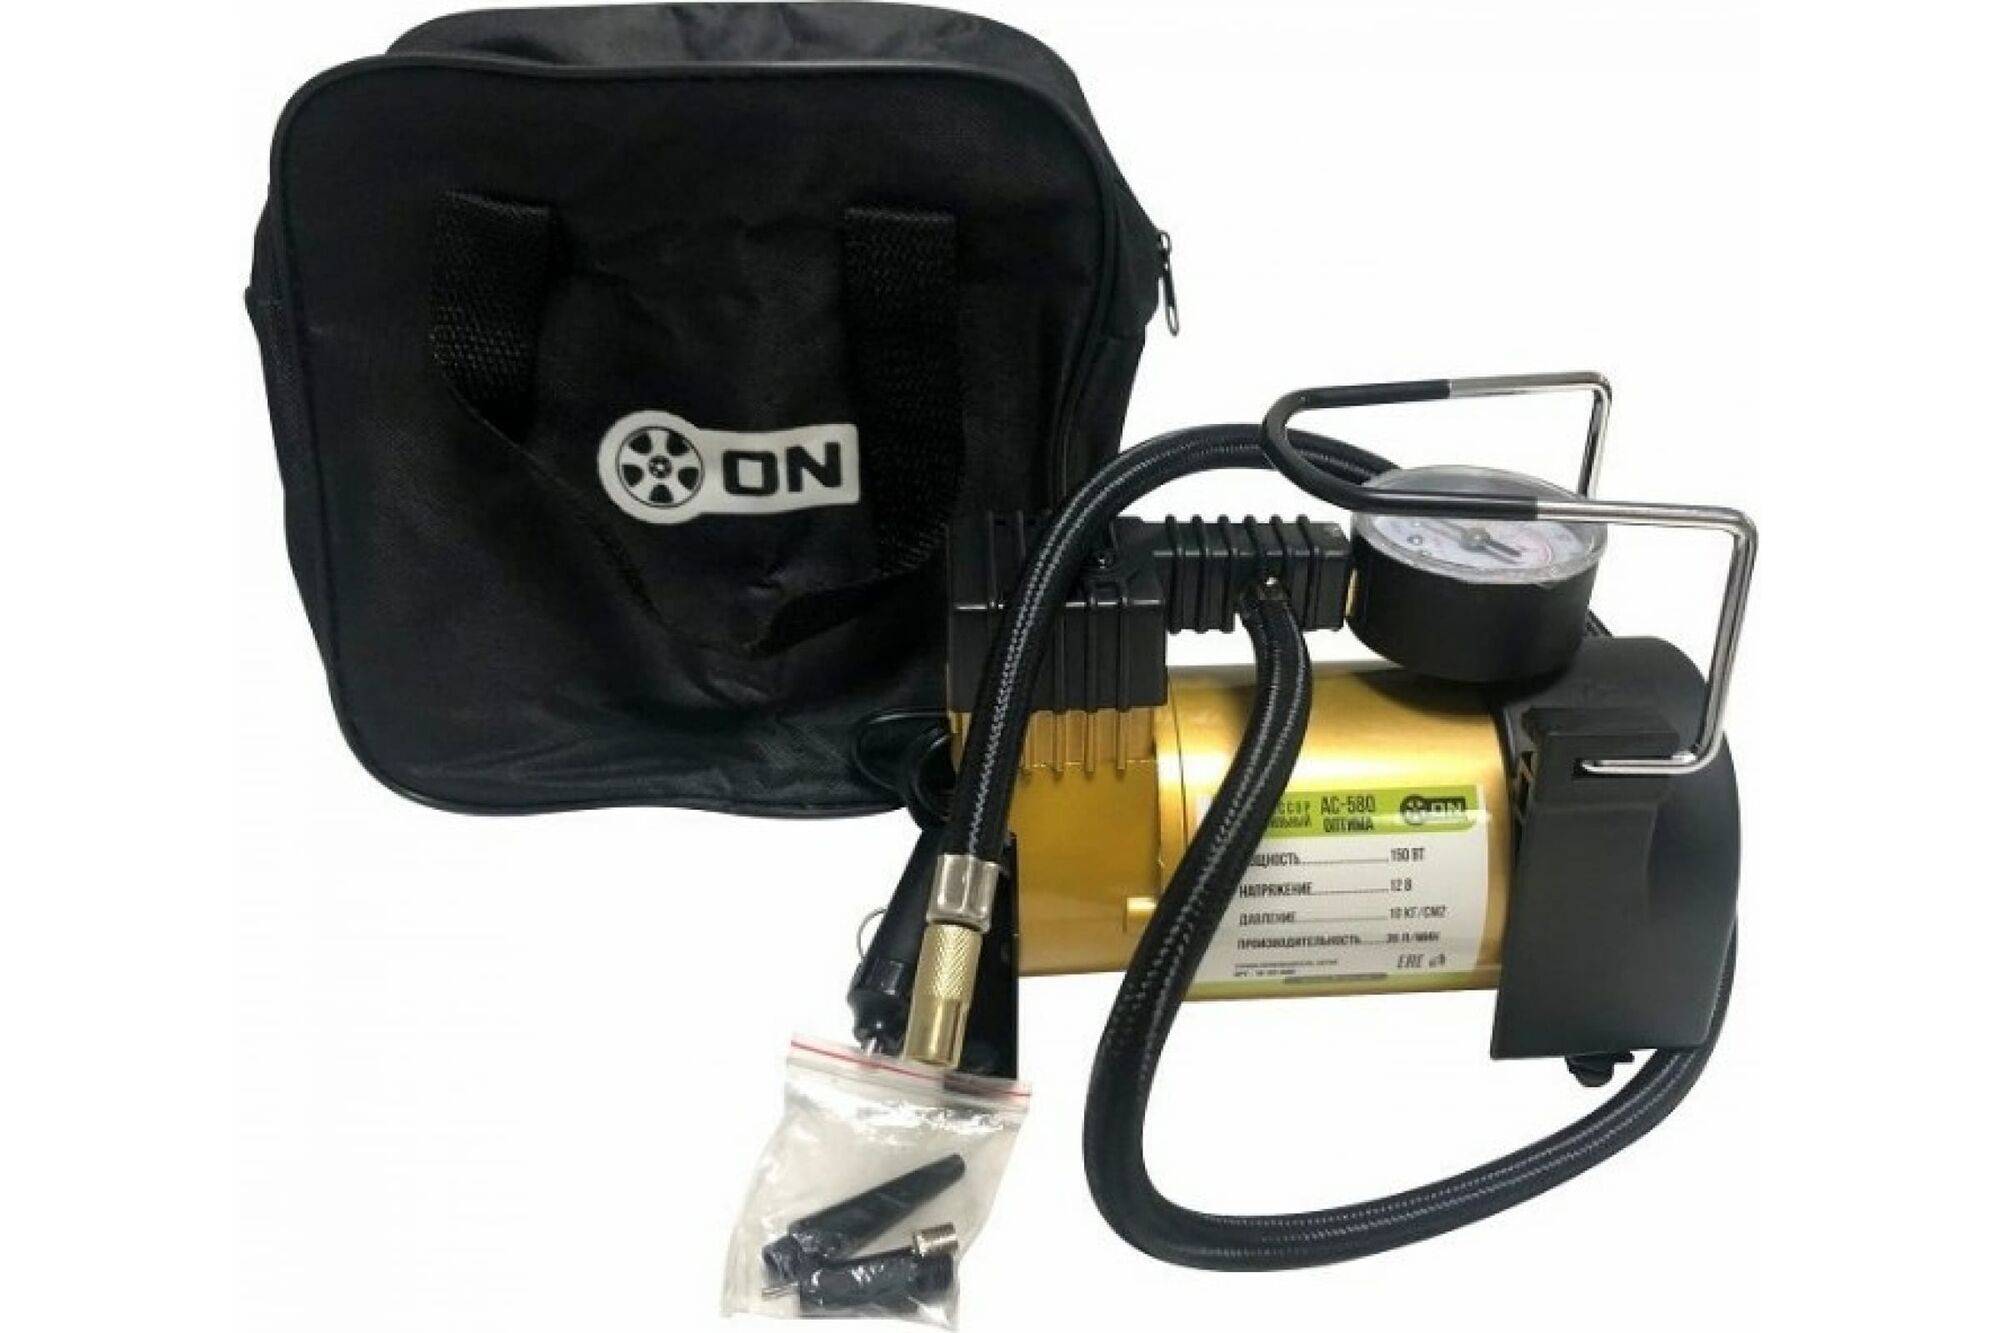 Автомобильный компрессор ON АС-580, тип Торнадо, в сумке, 40лмин, 160 Вт, 12 В. 16-03-001